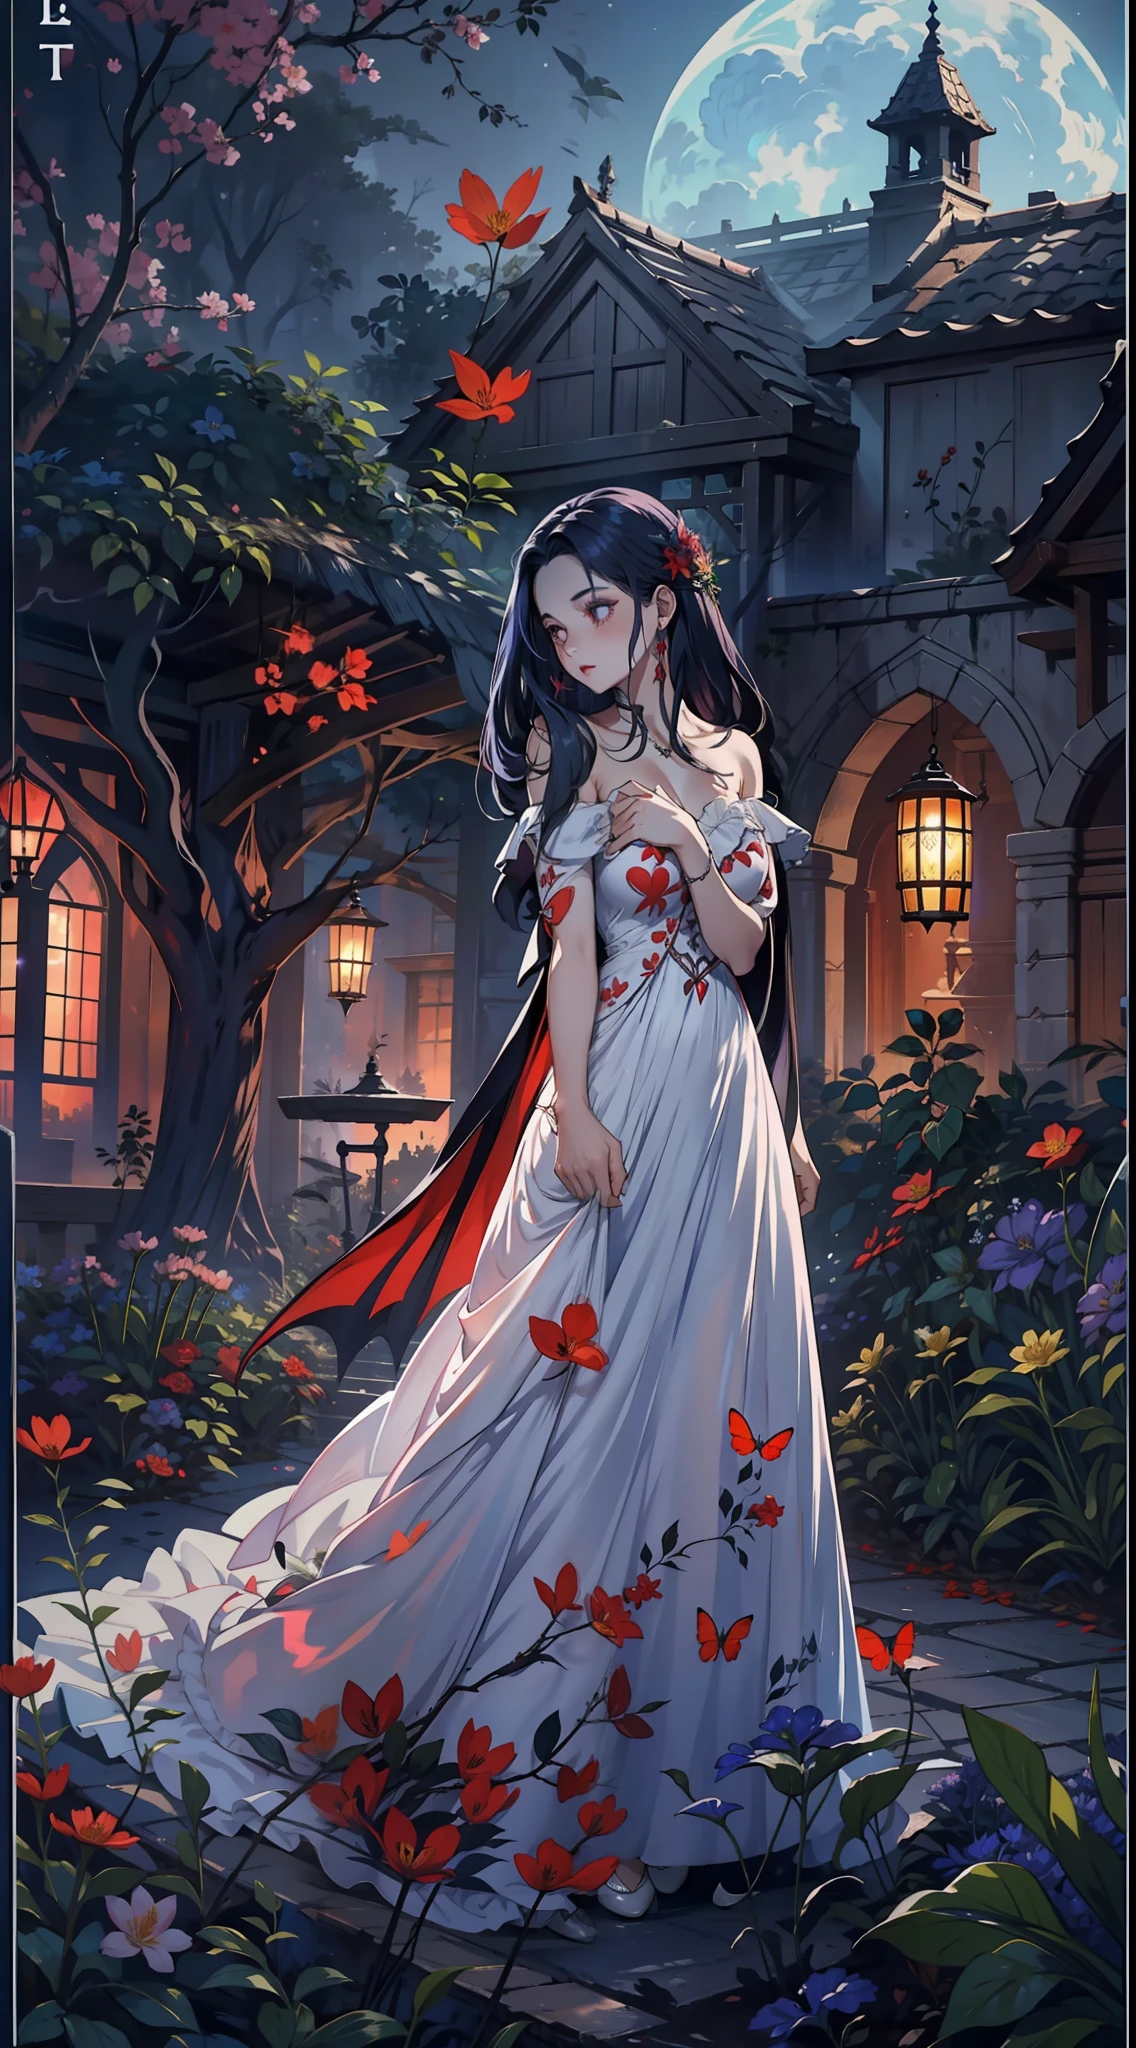 在一次春季聚会上, 一个美丽的吸血鬼在晴朗的夜晚穿过花园. 她的头发上戴着花环, 你的眼睛冰冷，皮肤缺乏色素., 她穿着长, 心形领口素净连衣裙.